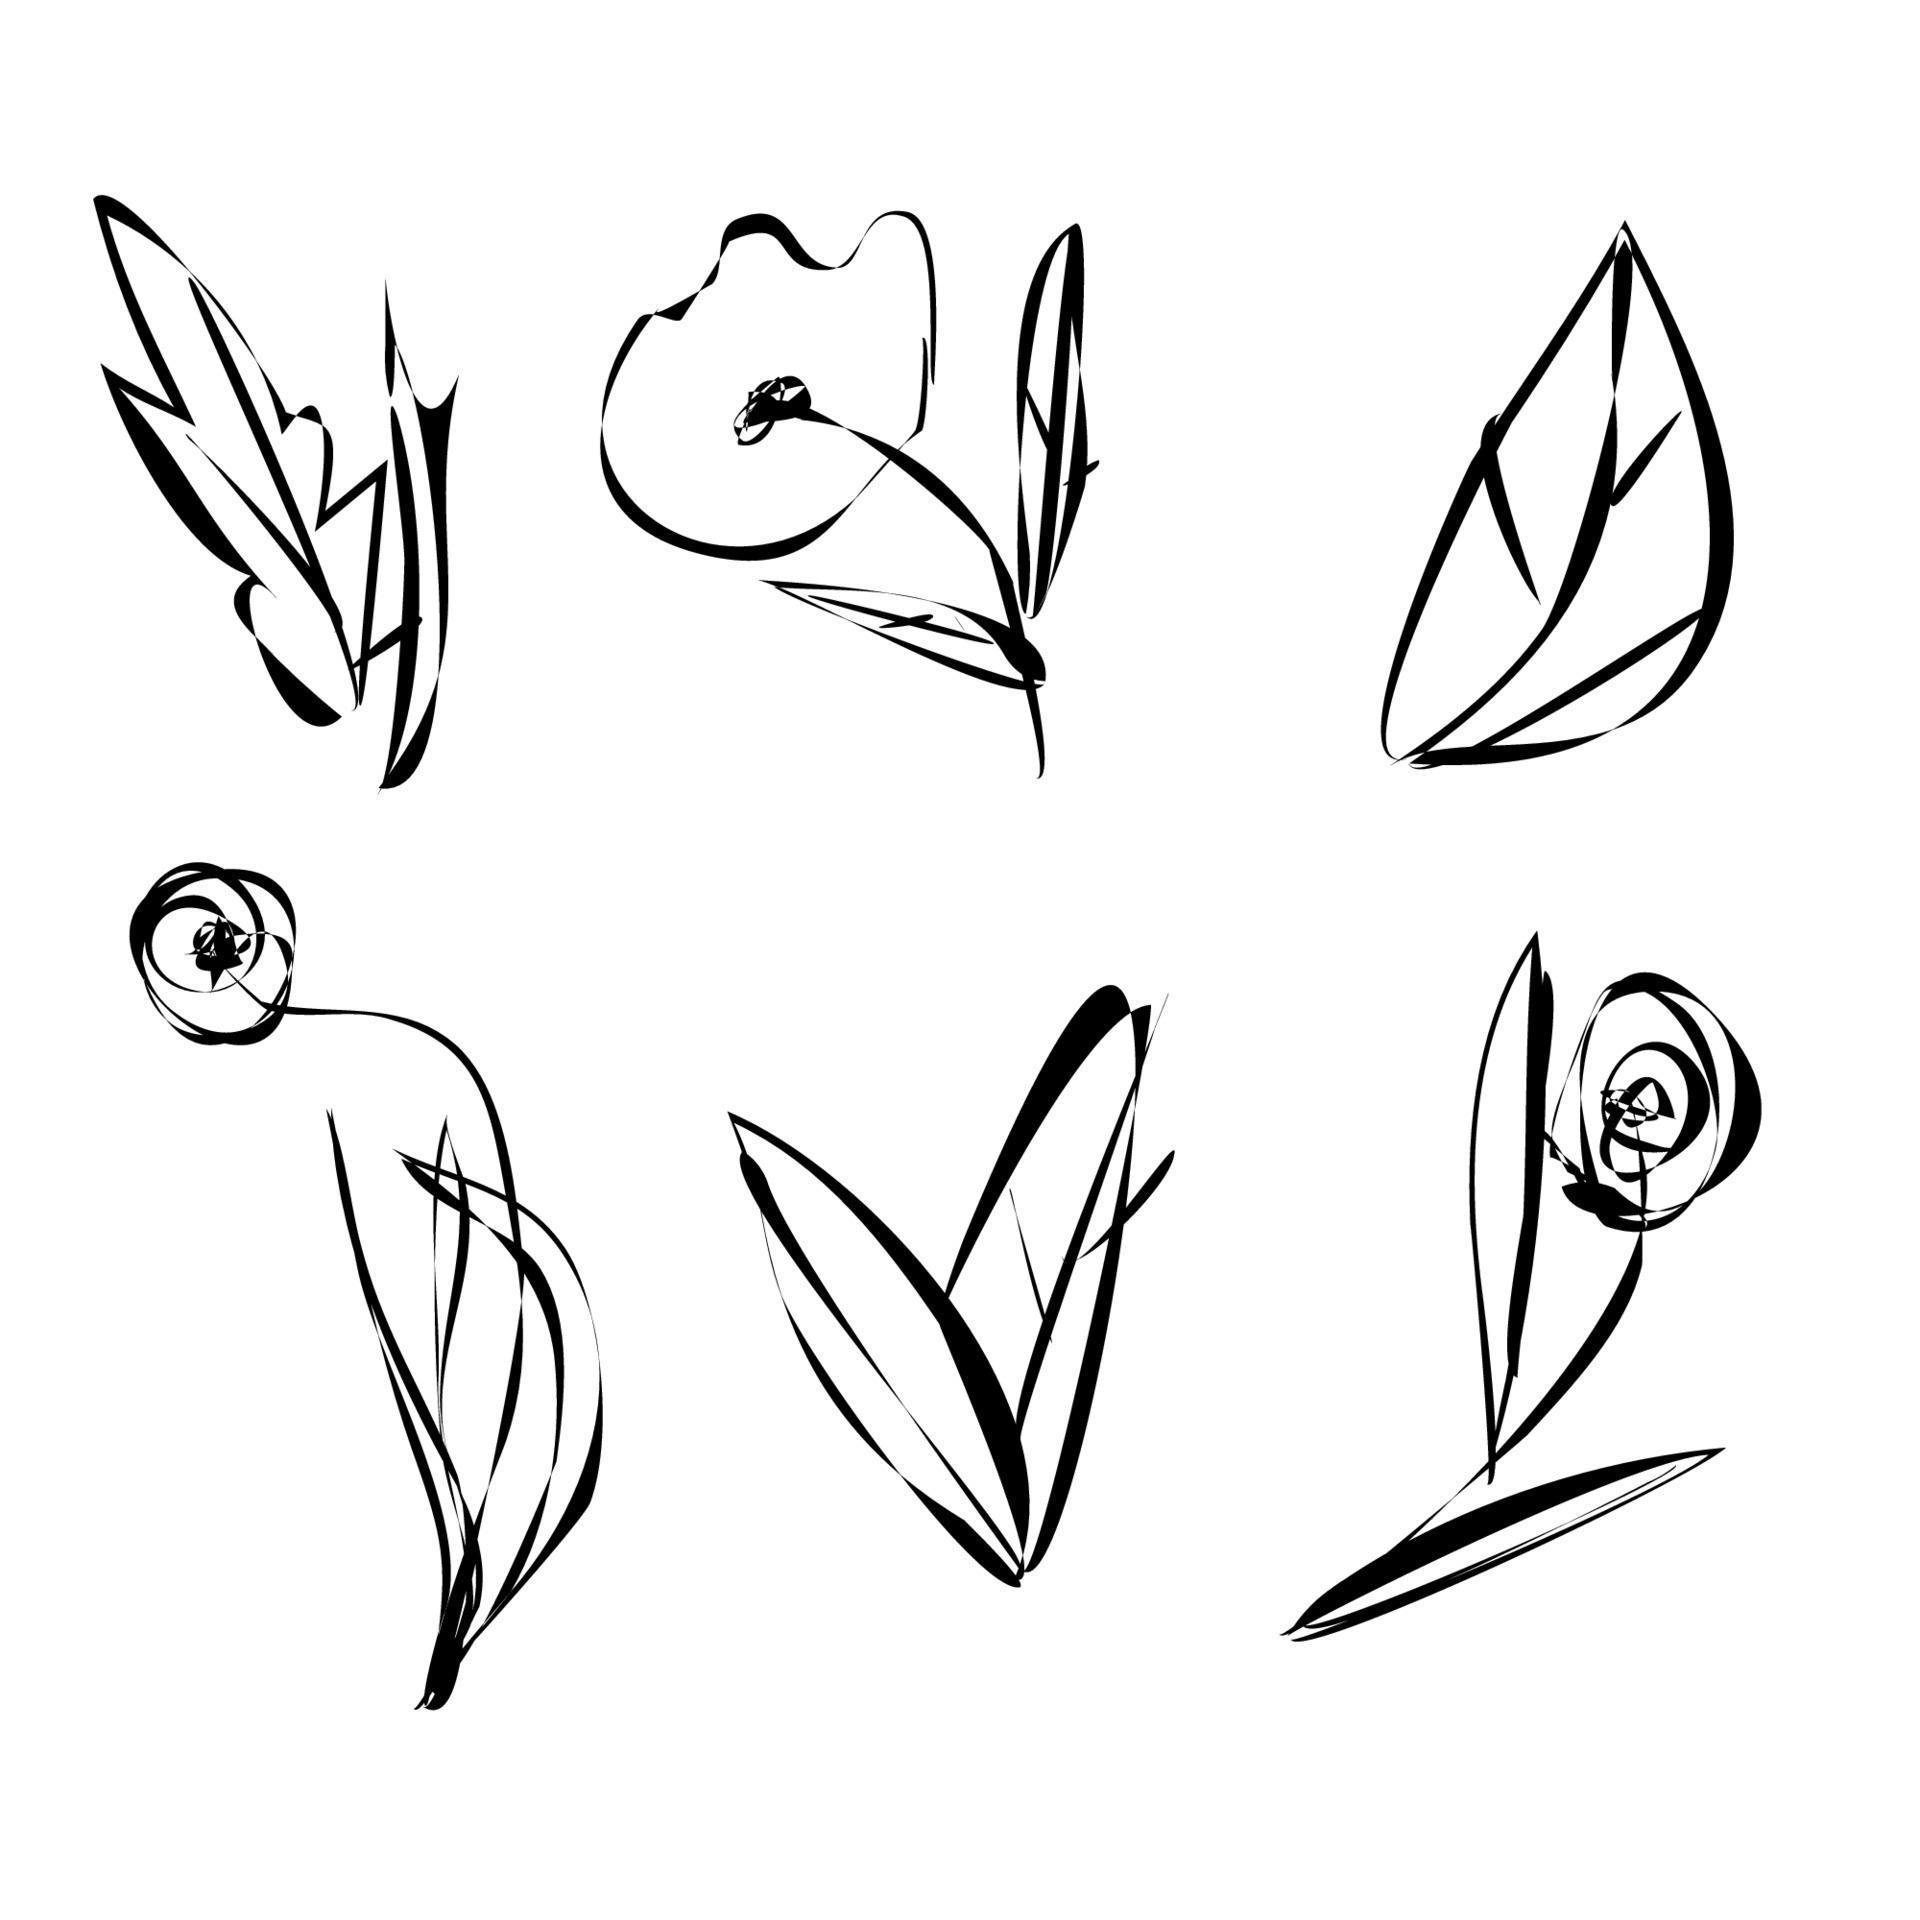 Satz von Skizzenblumen, Blättern und Pflanzen mit schwarzen Umrissen isoliert auf weißem Hintergrund. handbemalte Blumen. vektor